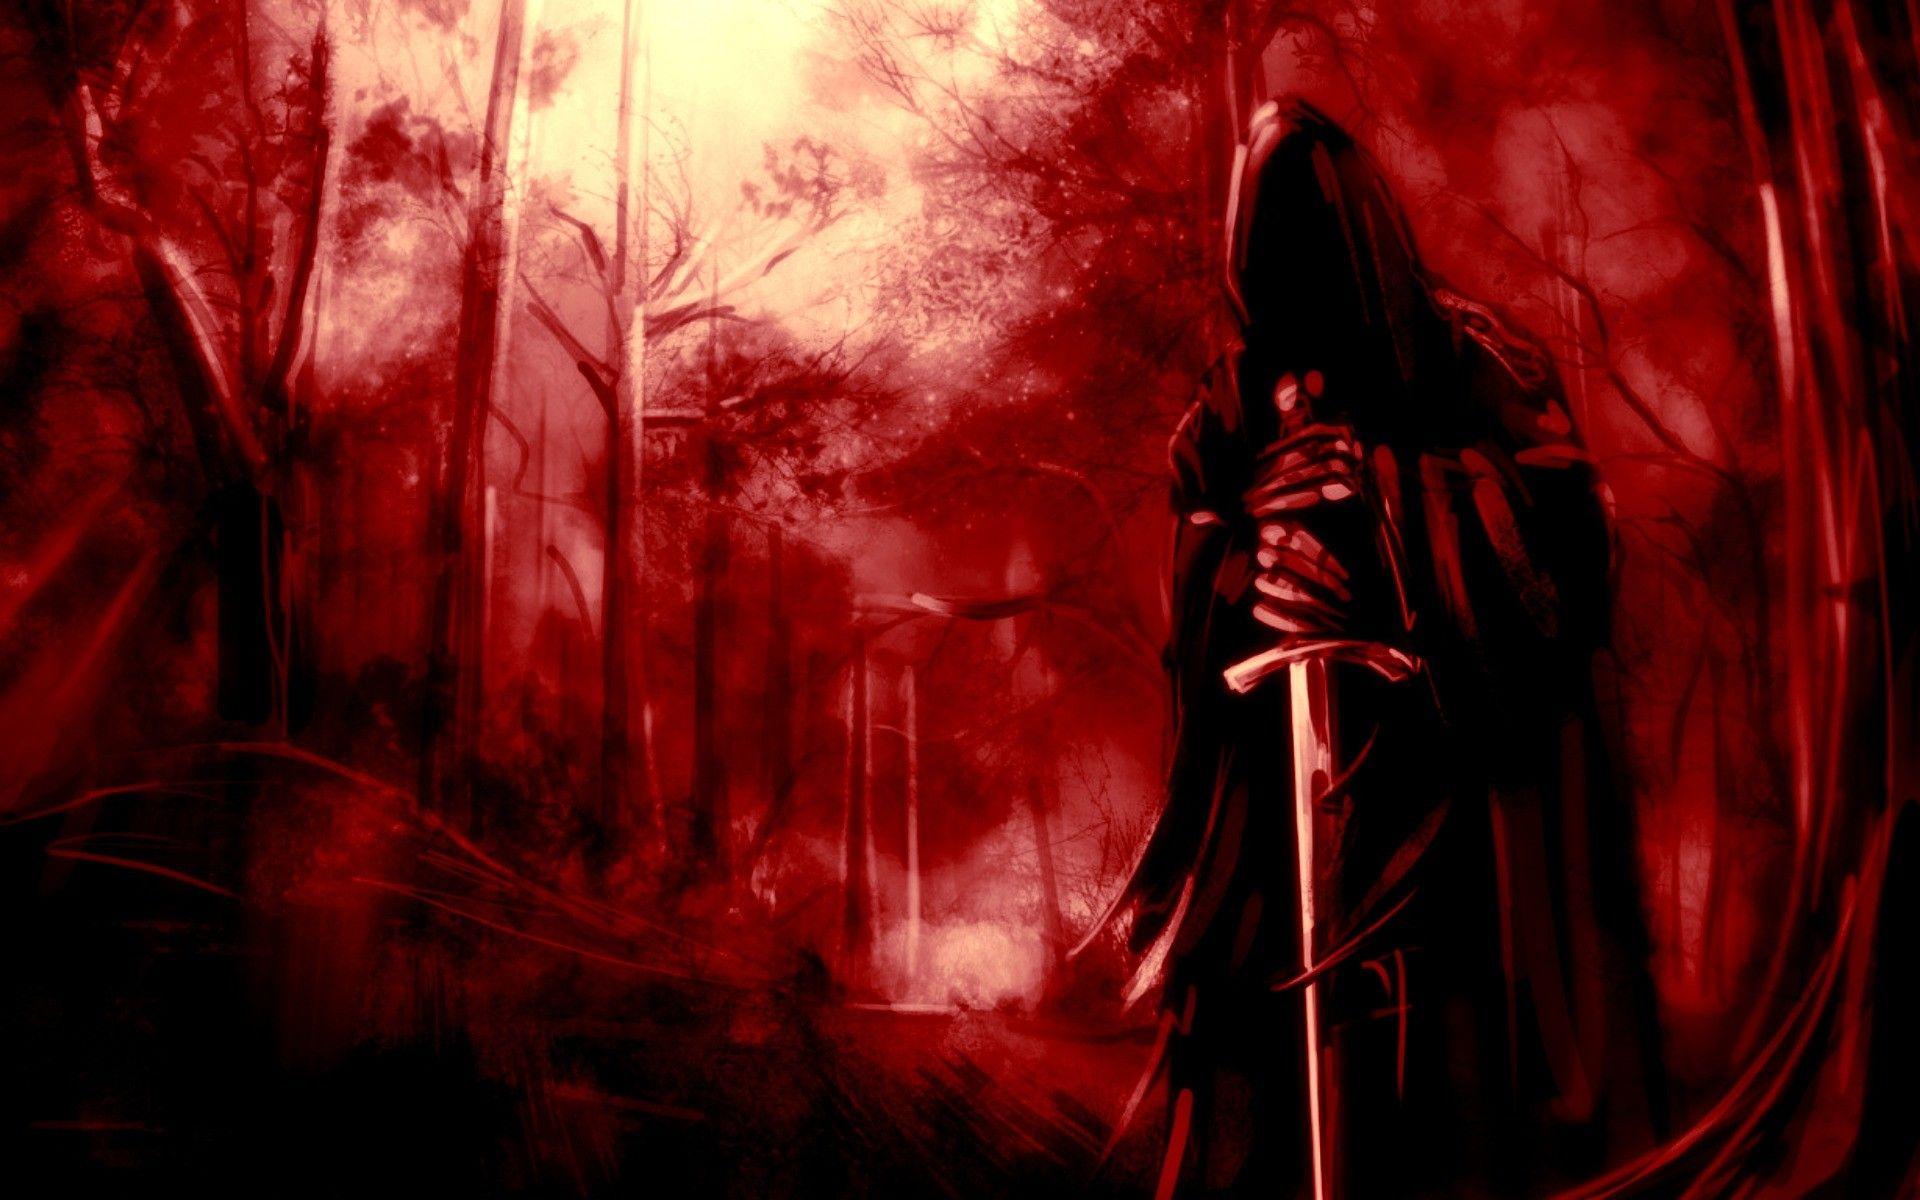 Realistic Grim Reaper Wallpapers - Top Free Realistic Grim Reaper ...